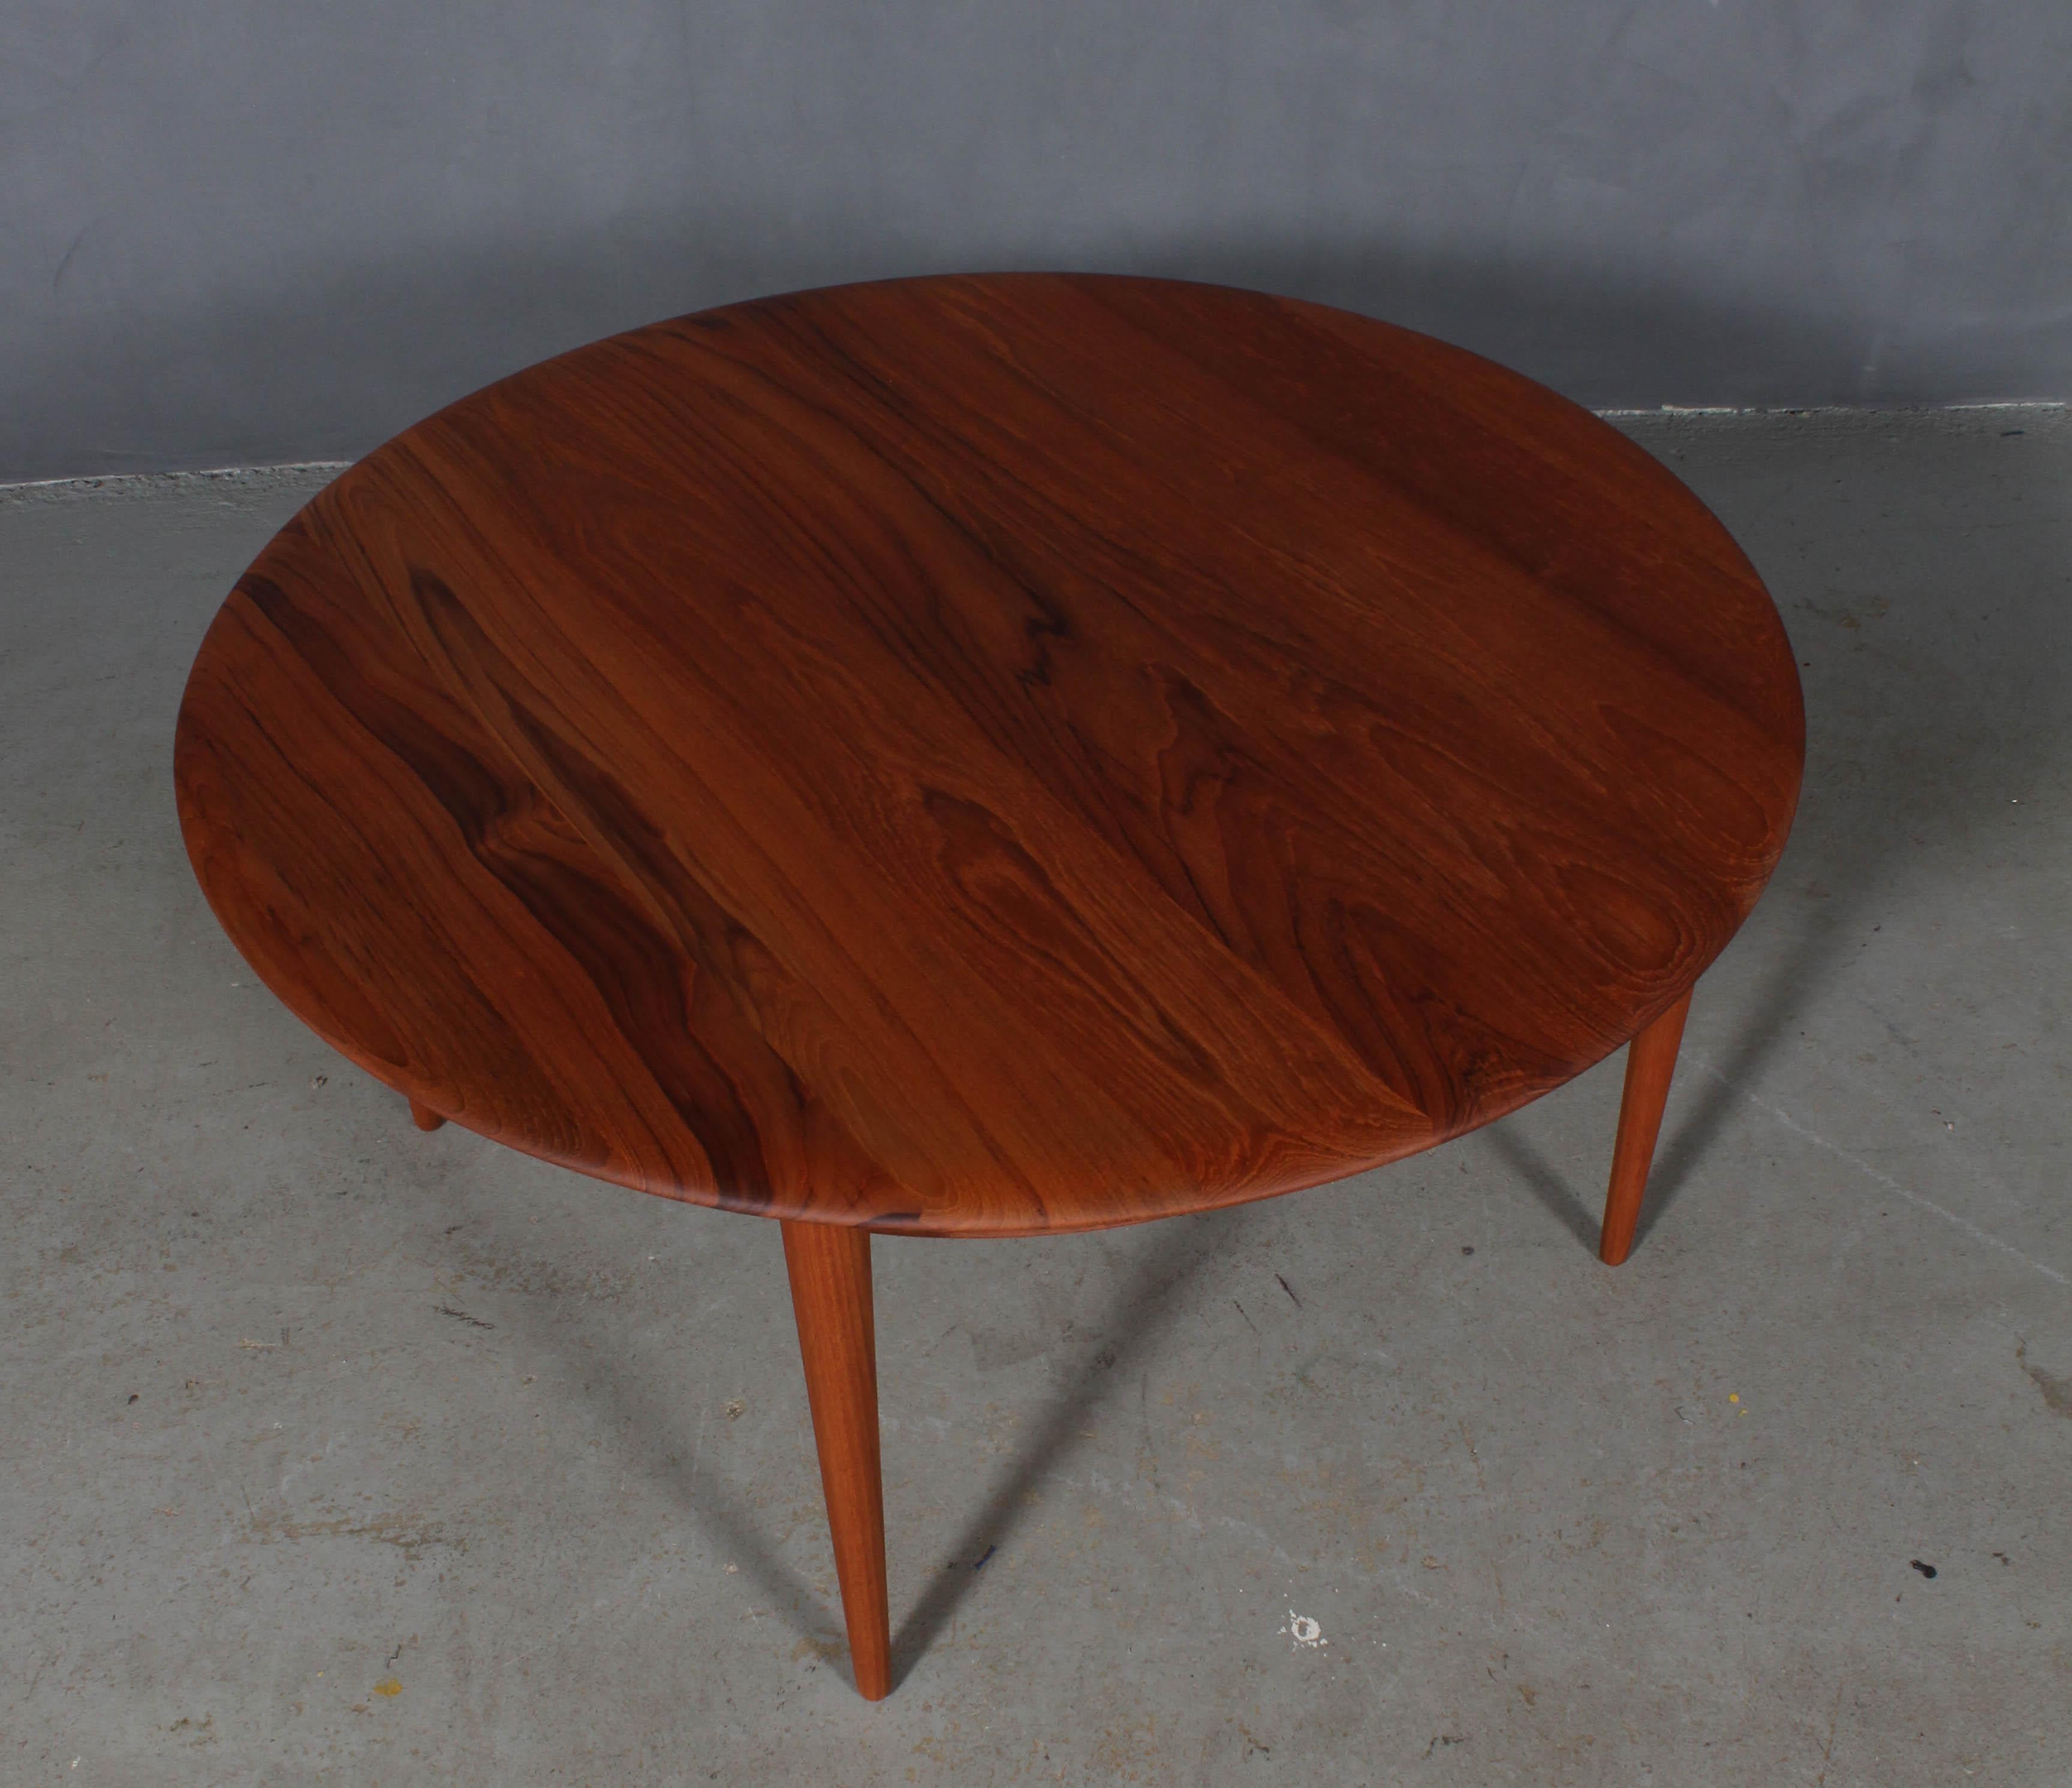 Peter Hvidt & Orla Mølgaard Nielsen sofa table in sold teak.

Cane shelf.

Made by France & Daverkosen in the 1960s.